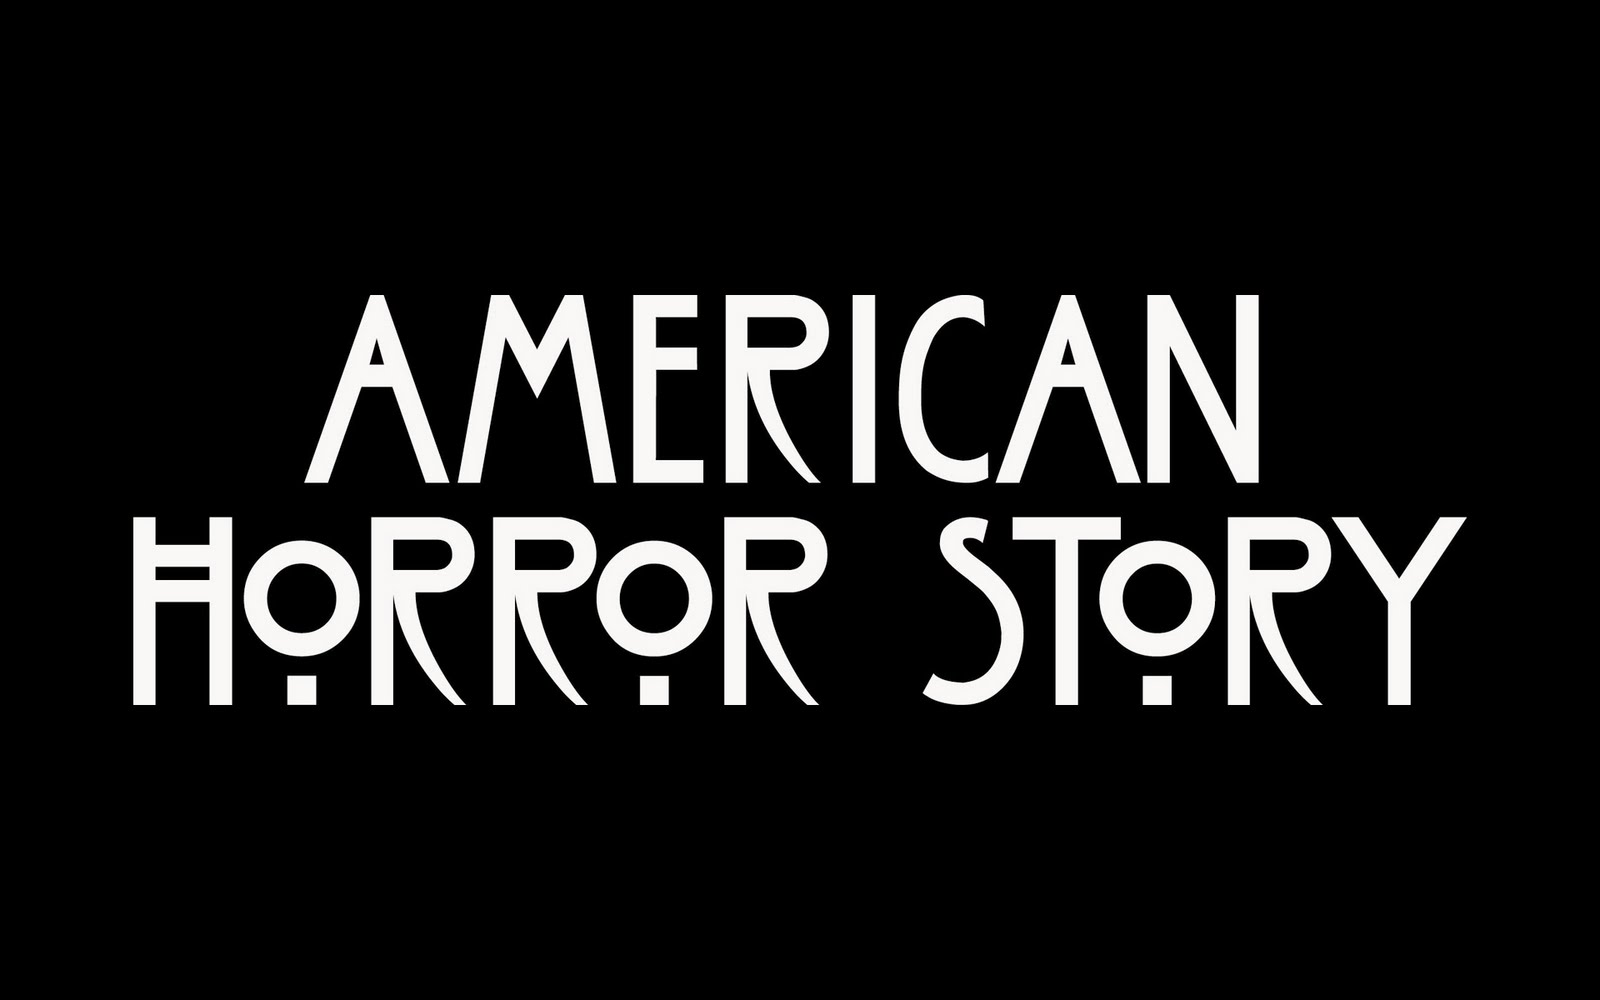 ahs saison 10 - American Horror Story Saison 10: Ryan Murphy pense à réunir le meilleur du casting pour l'ultime saison ahs wallpaper american horror story 28905384 1600 1000